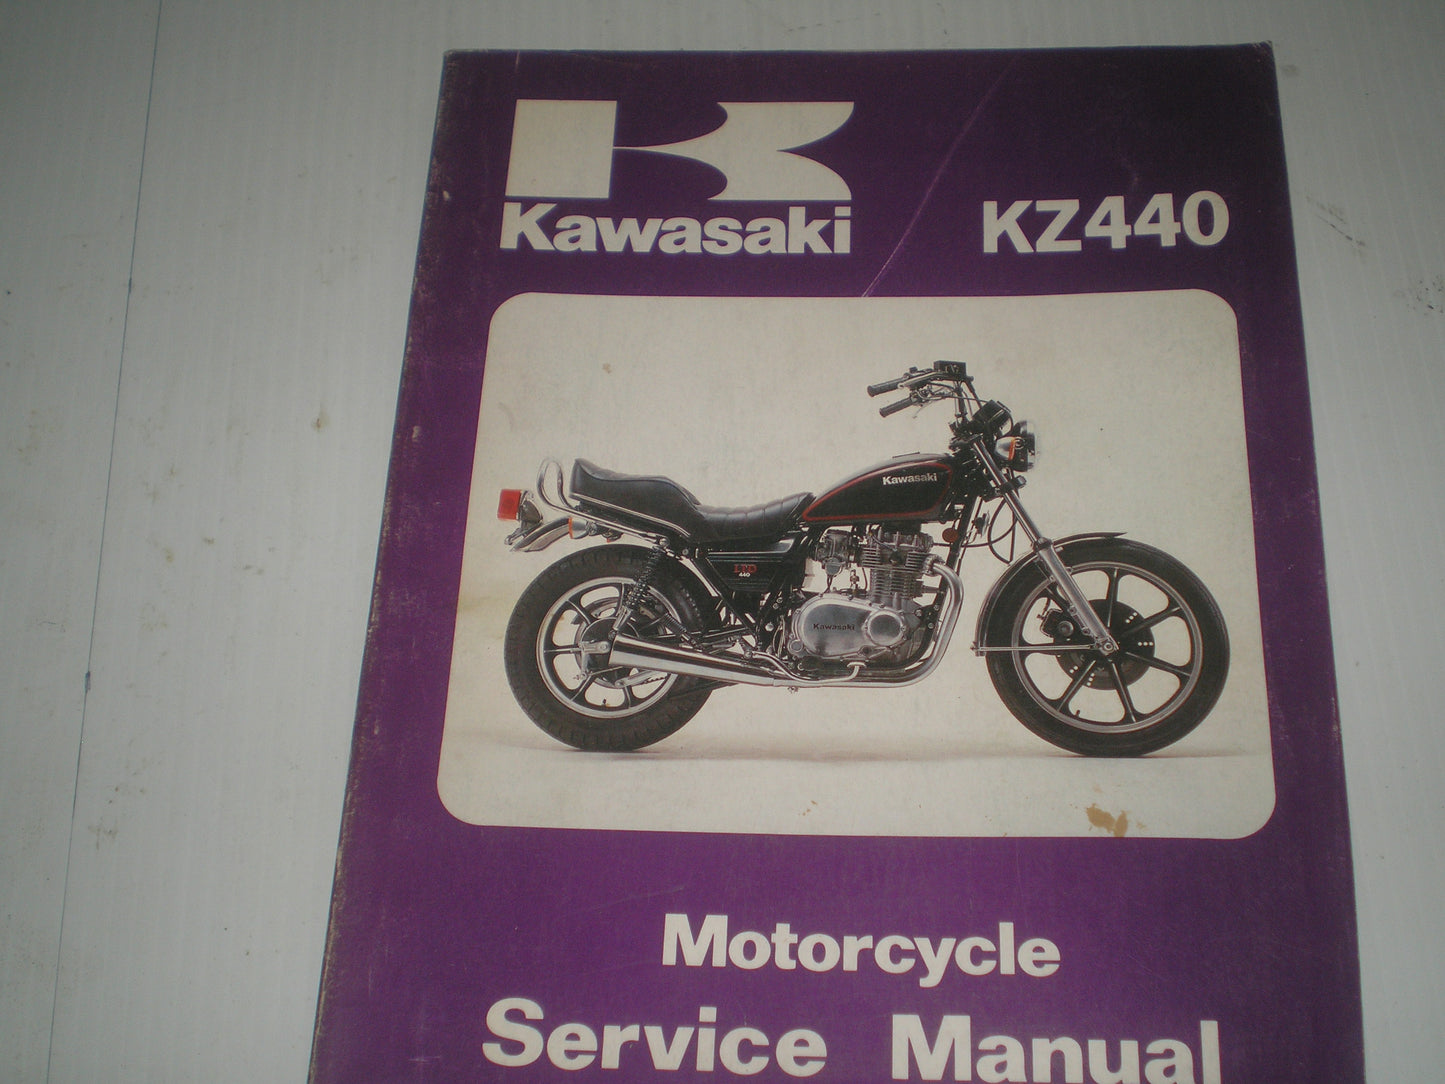 KAWASAKI KZ440  A1 B1 C1 D1 A2 B2 C2 D2 1980 1981  Service Manual  99924-1022-02  #1179